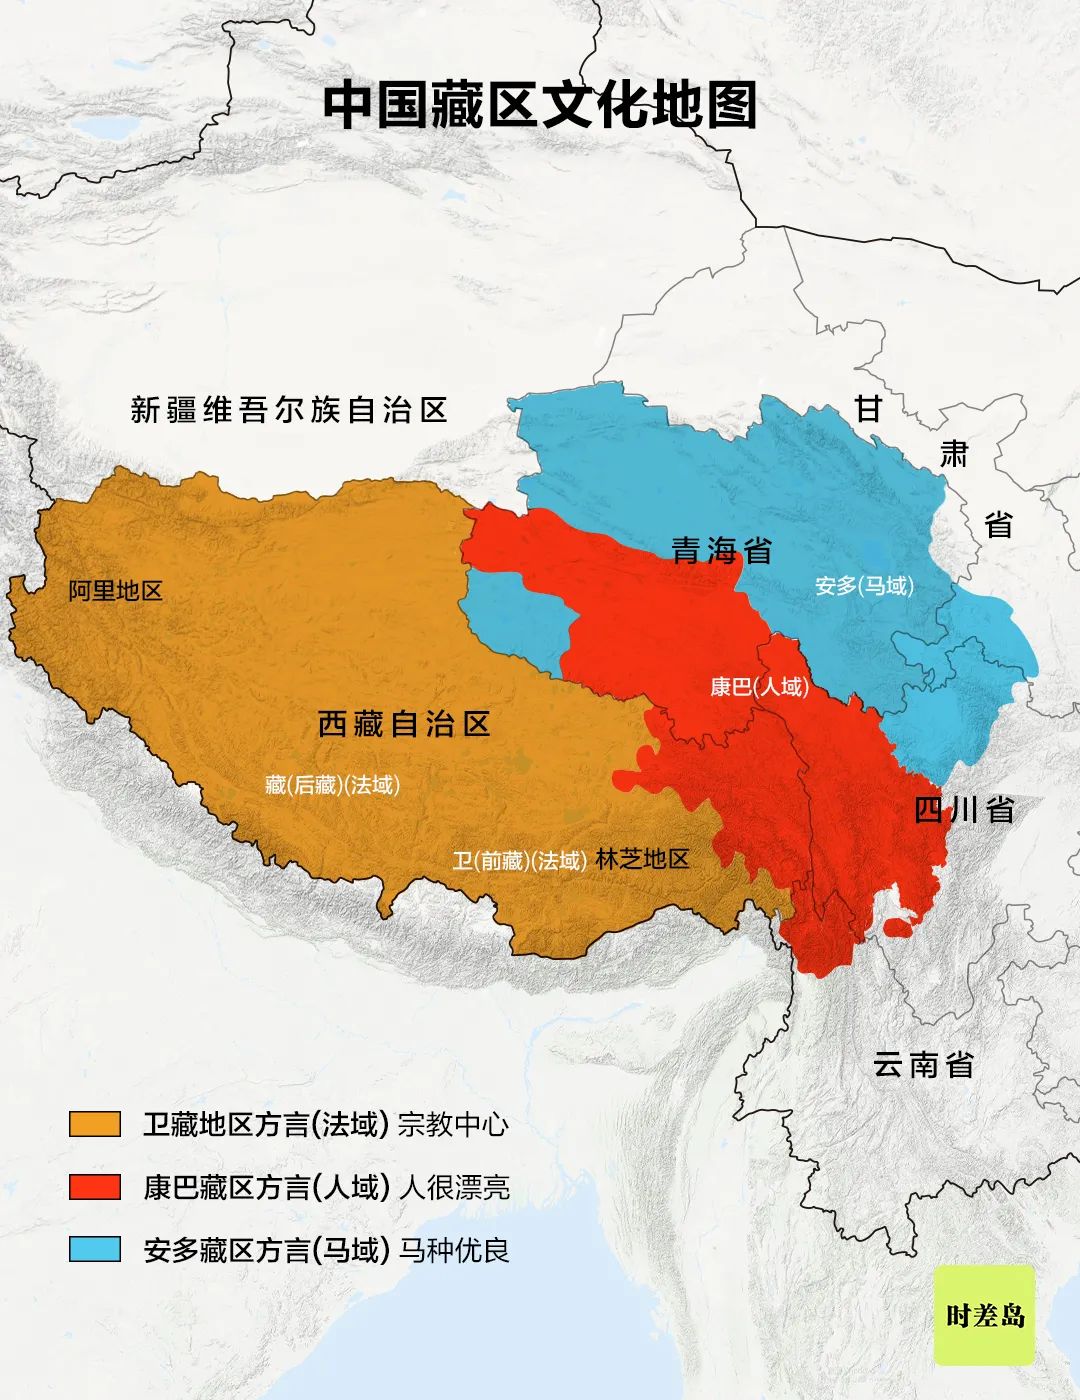 中国藏区按方言划分,除3大分支,还有7小分支:工布藏族,嘉绒藏族